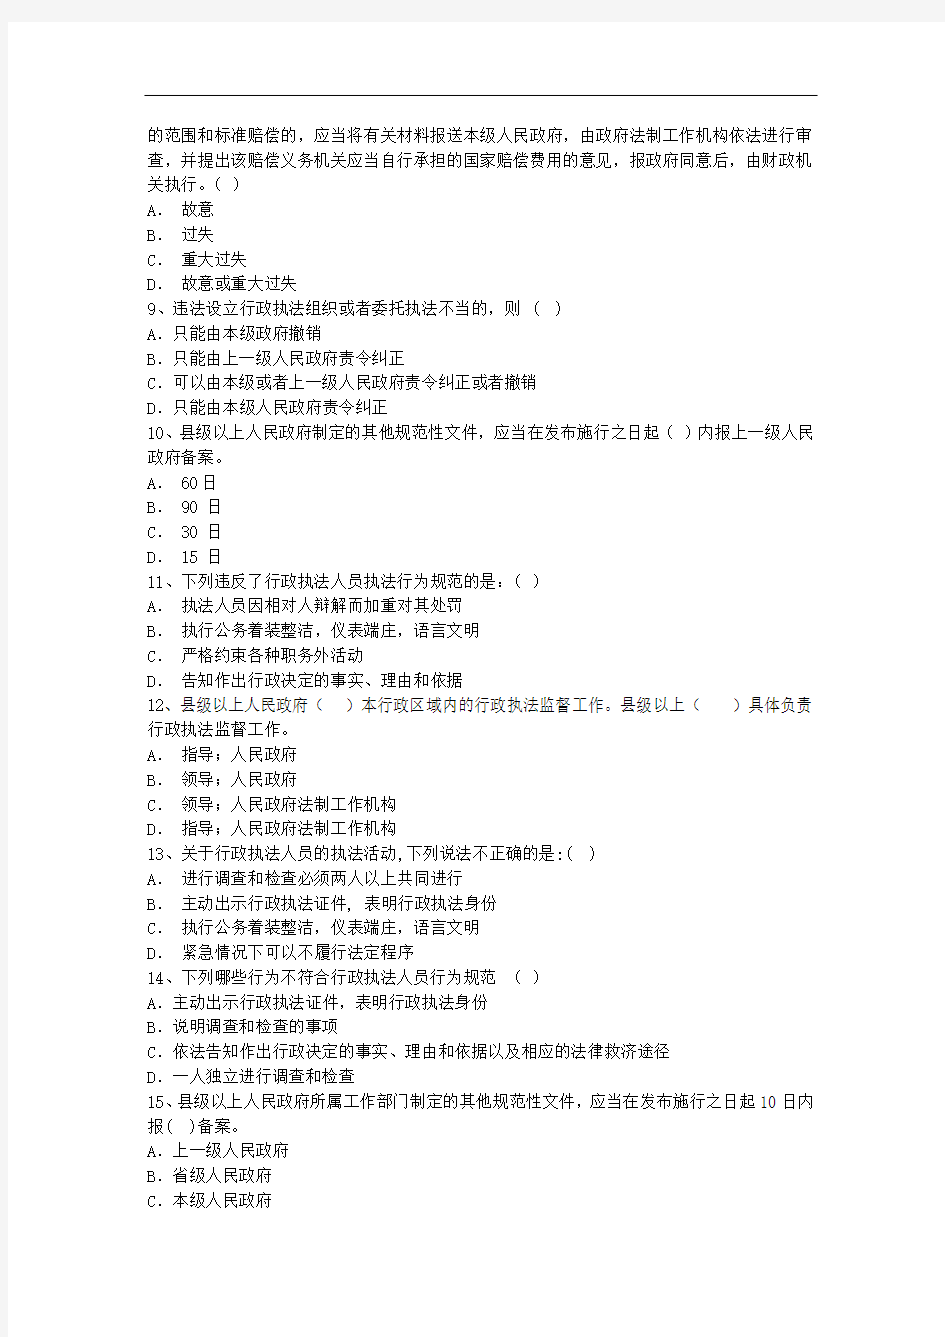 企业法律顾问考试高效复习五法宝每日一练(2014.8.7)